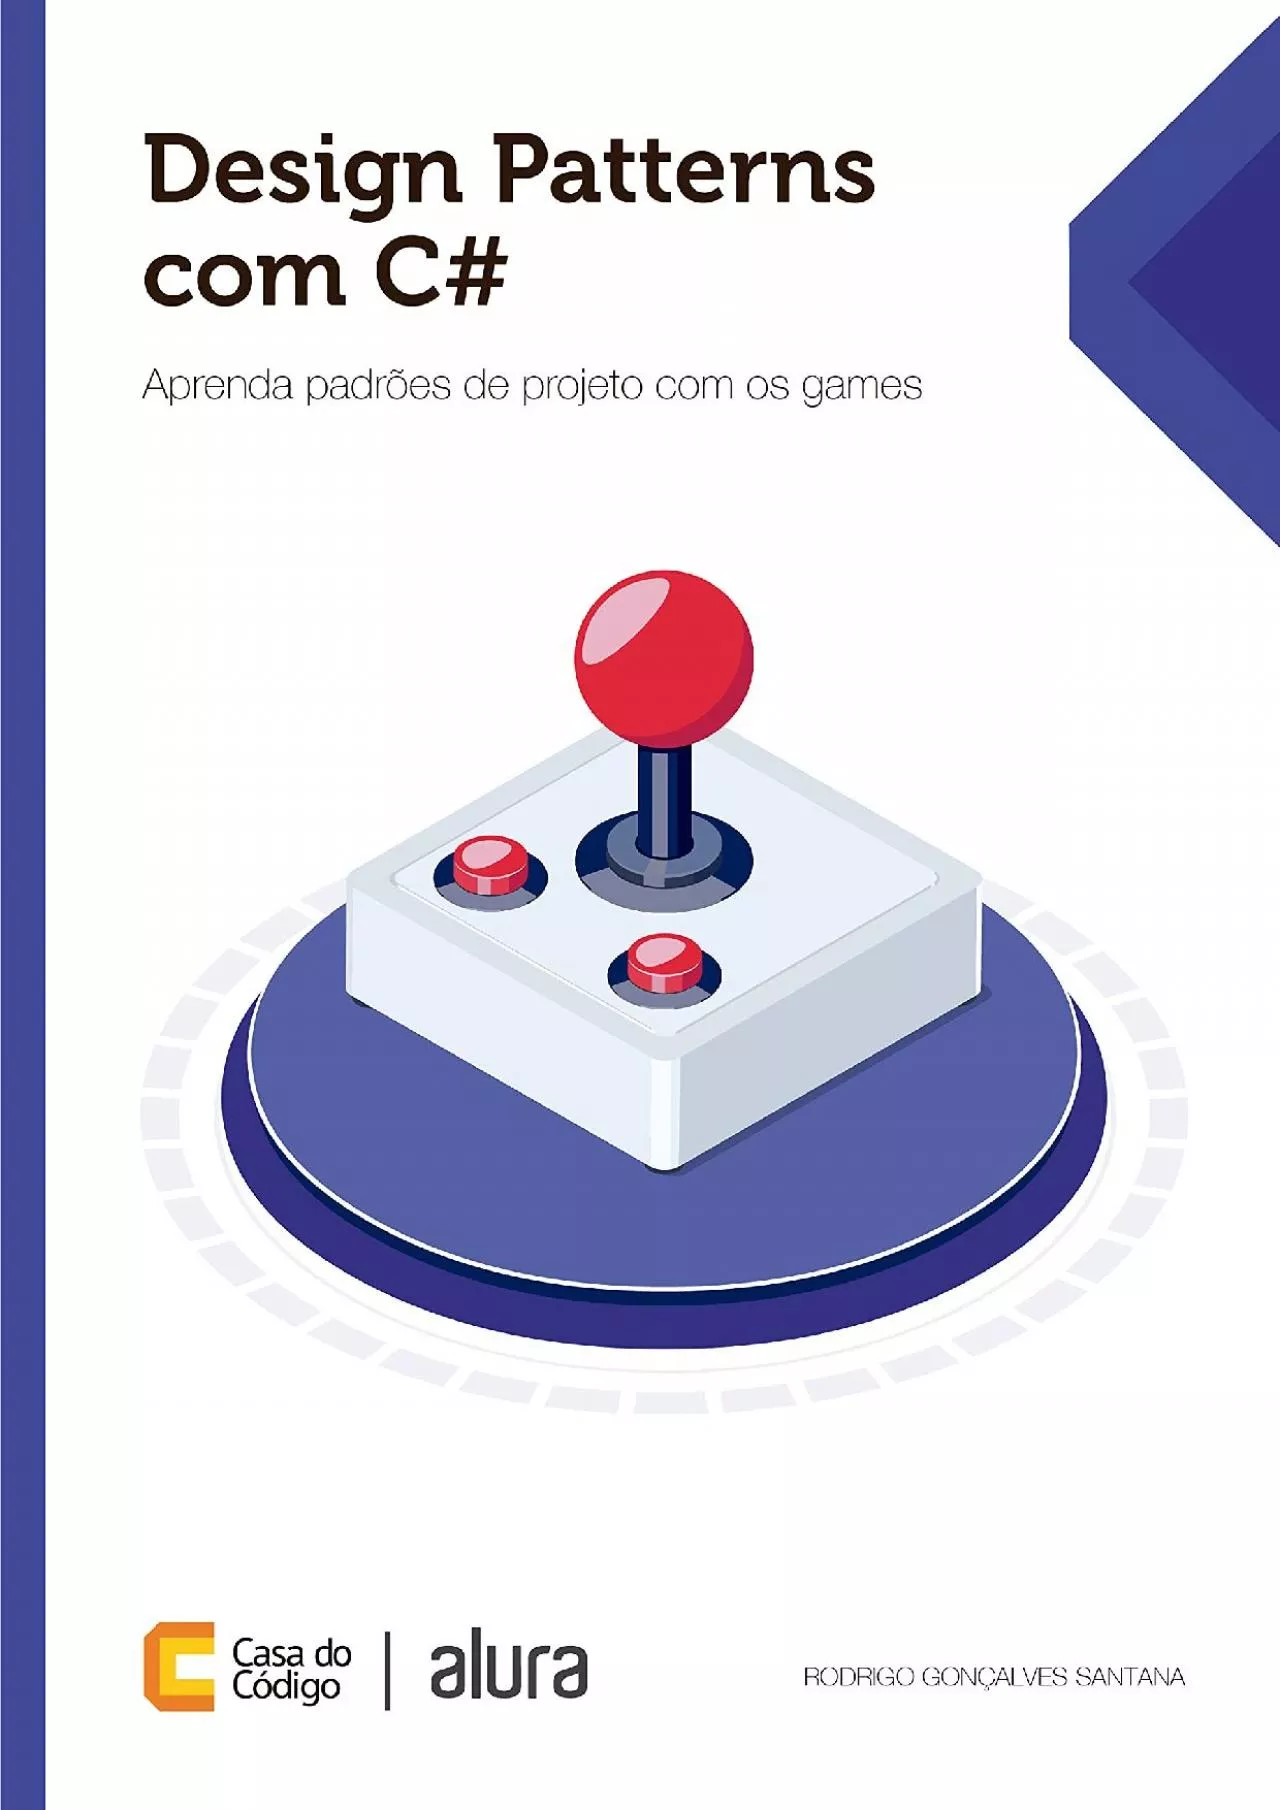 [PDF]-Design Patterns com C: Aprenda padrões de projeto com os games (Portuguese Edition)